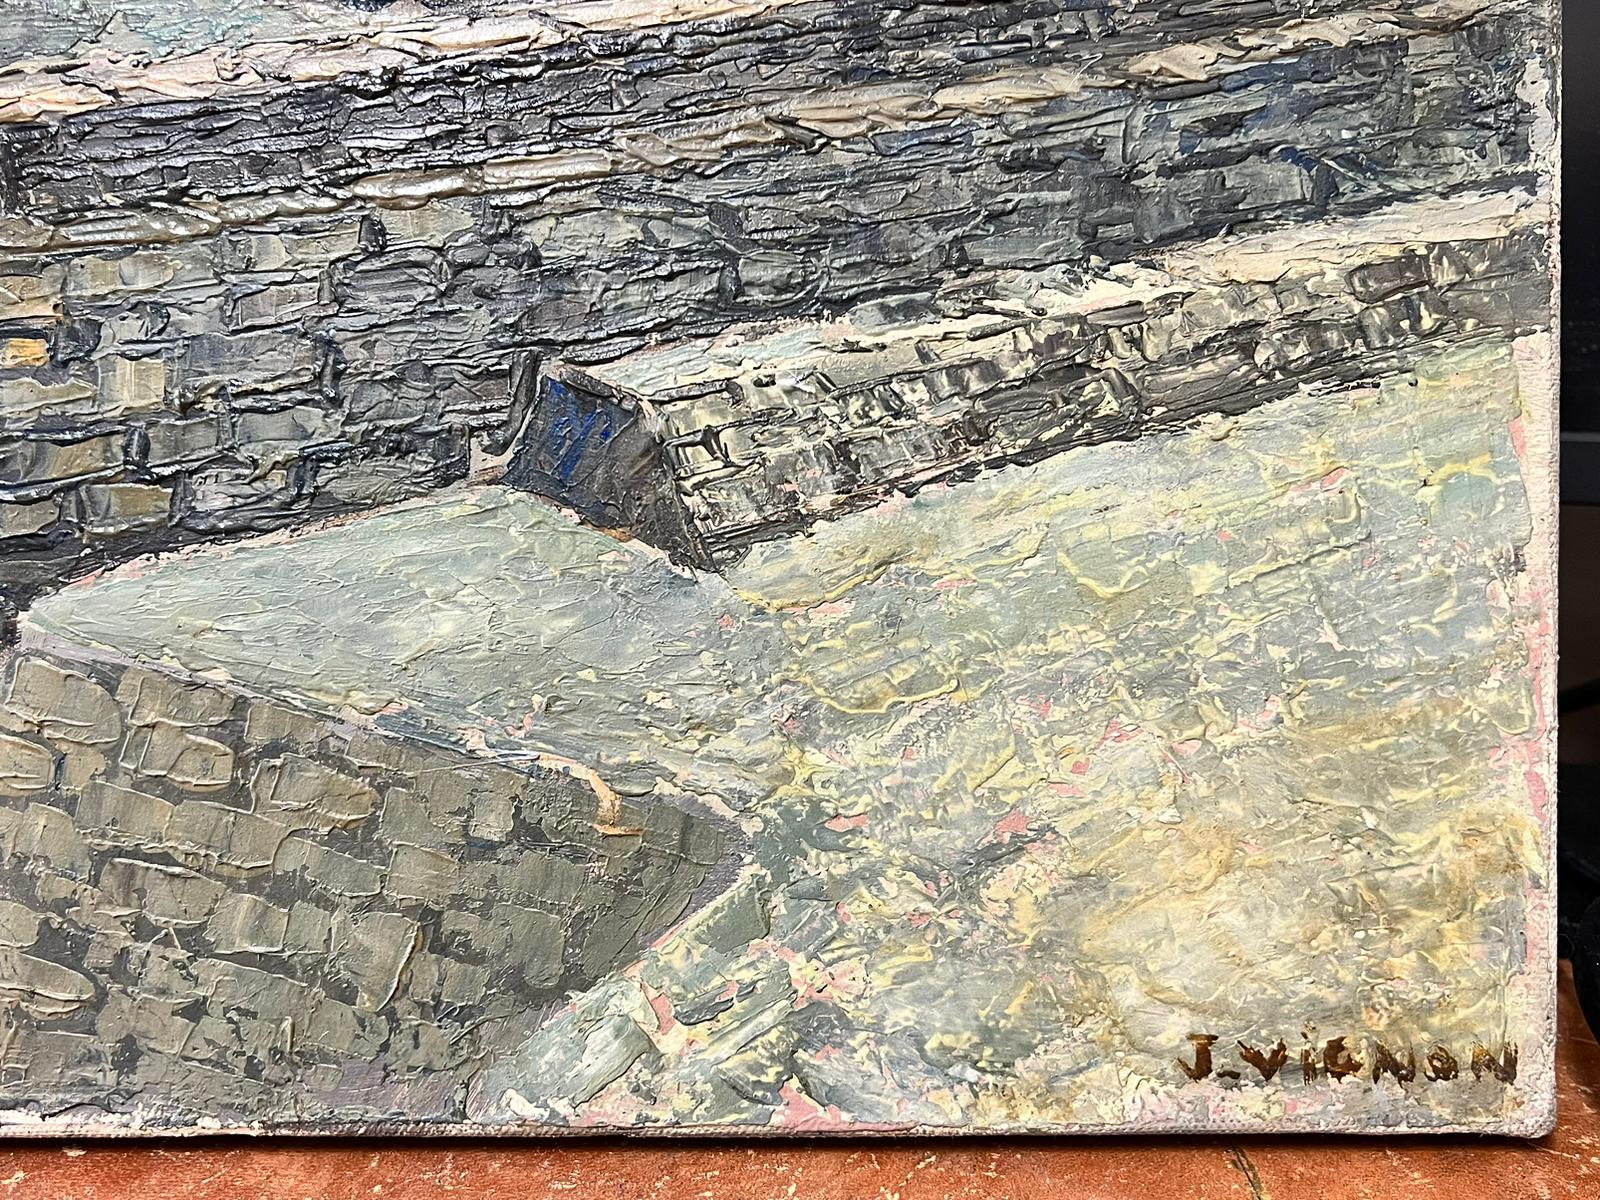 Port en Bessin Côte normande Grande huile post-impressionniste française des années 1960 - Post-impressionnisme Painting par Josine Vignon